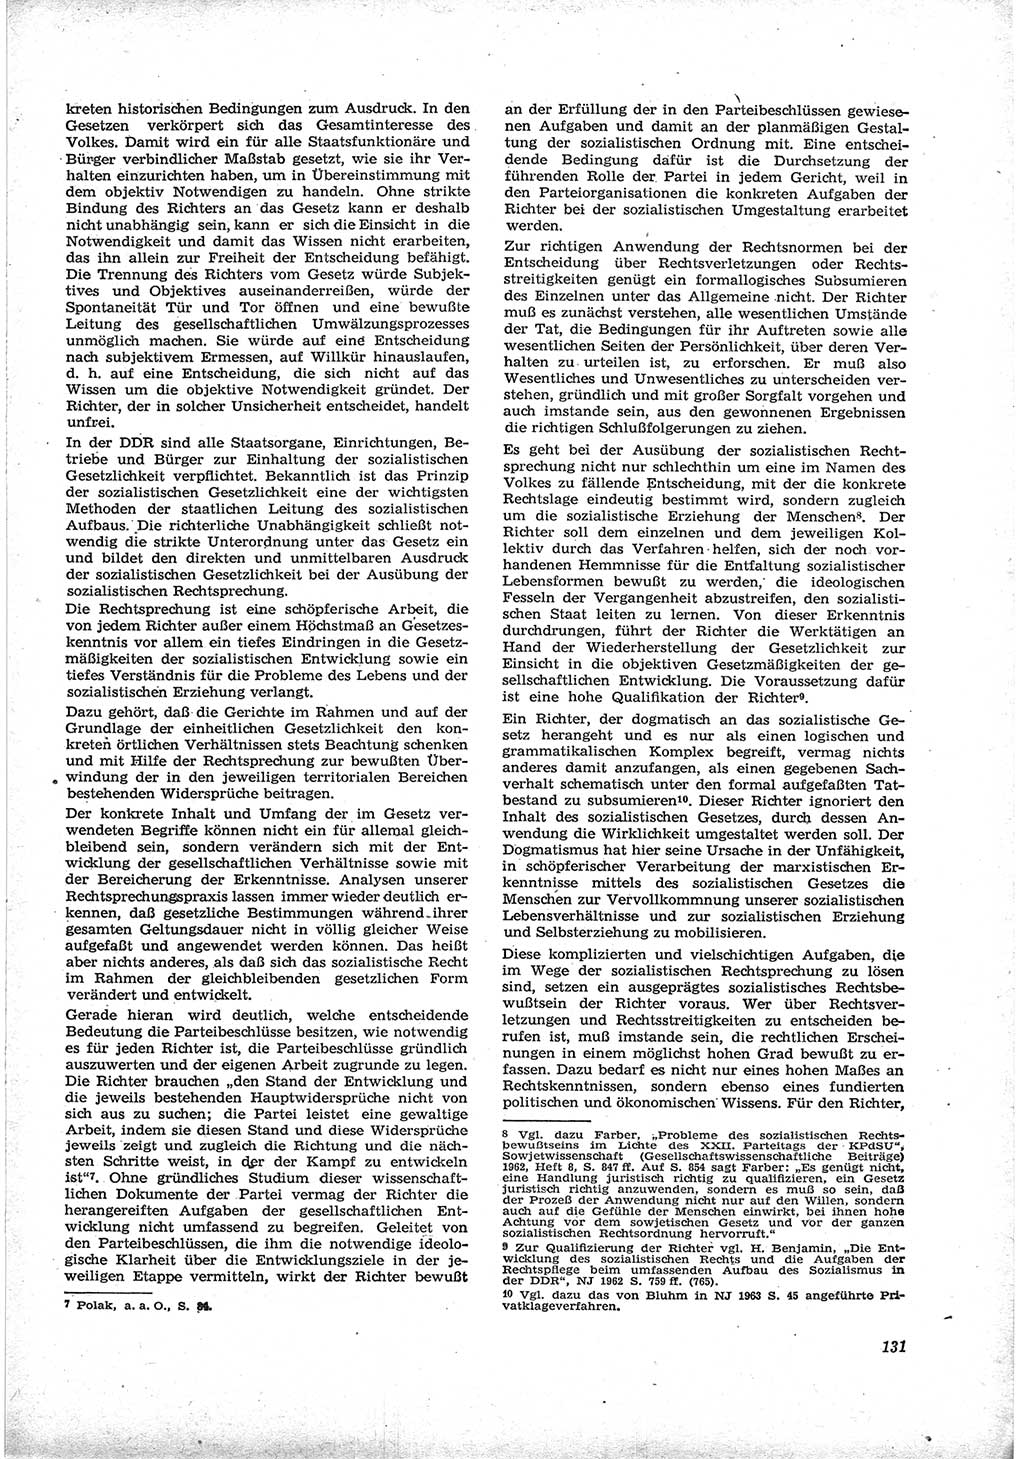 Neue Justiz (NJ), Zeitschrift für Recht und Rechtswissenschaft [Deutsche Demokratische Republik (DDR)], 17. Jahrgang 1963, Seite 131 (NJ DDR 1963, S. 131)